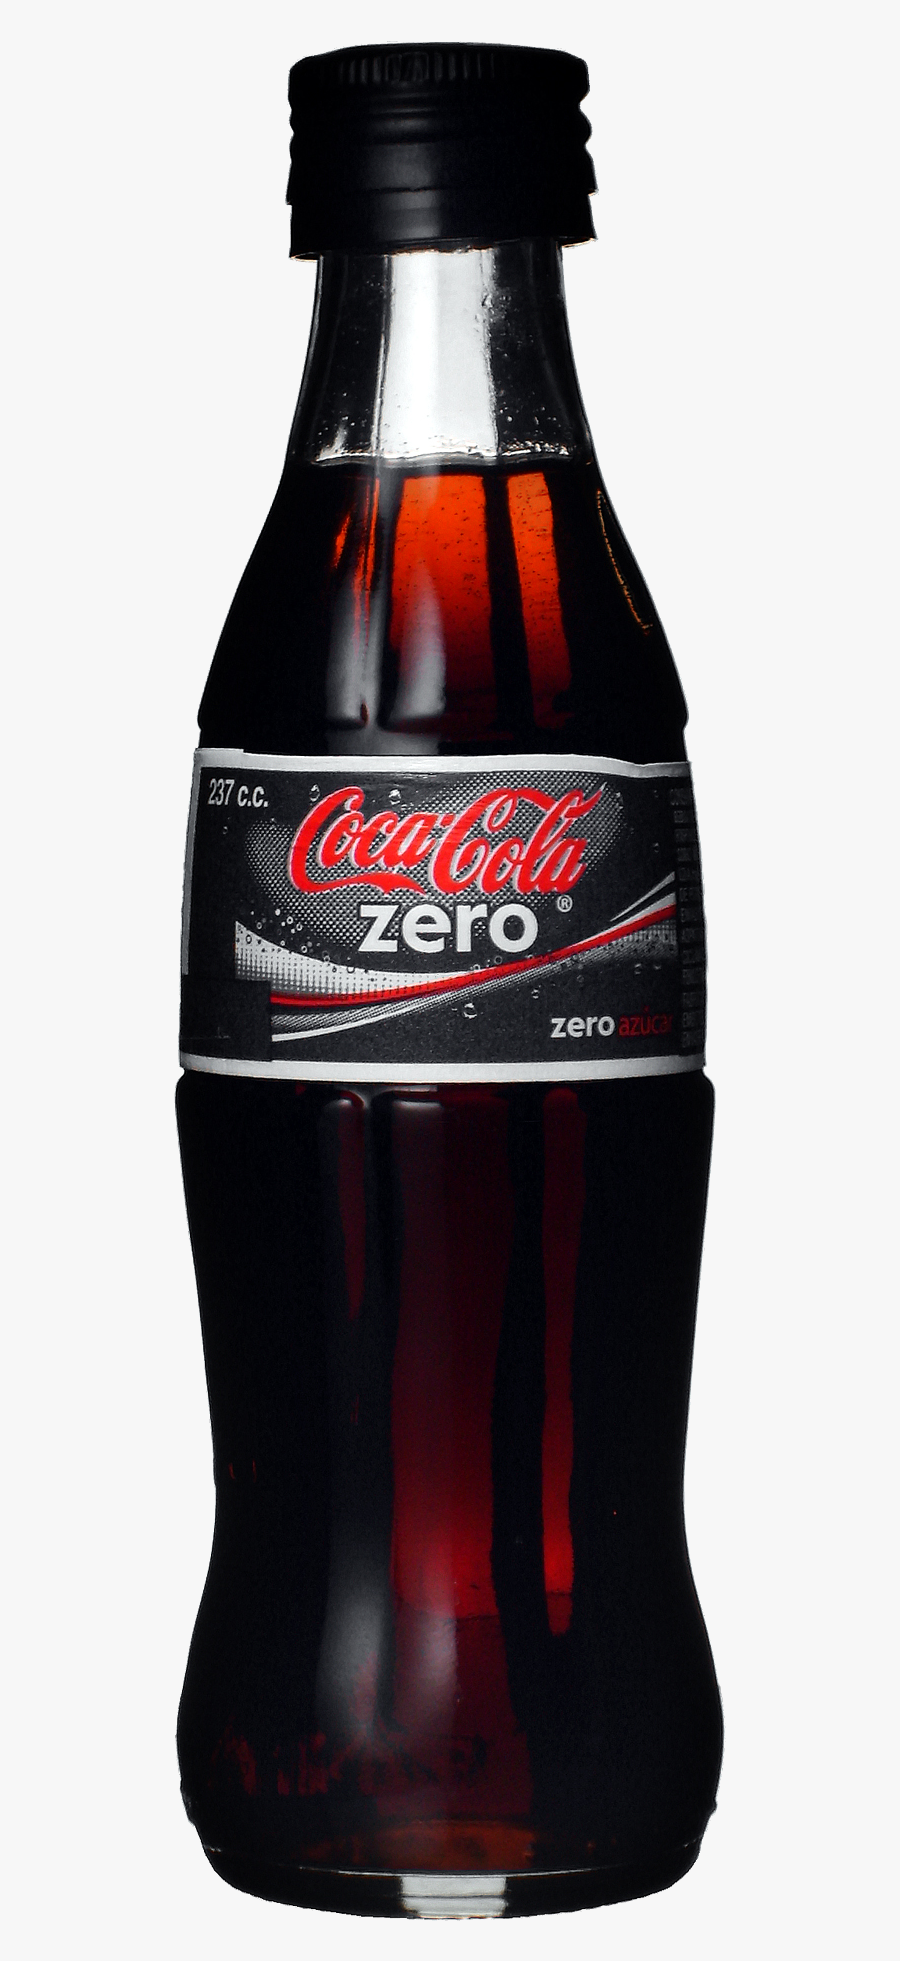 Coca Cola Bottle Png Image - Coca Cola Zero Bottle Png, Transparent Clipart